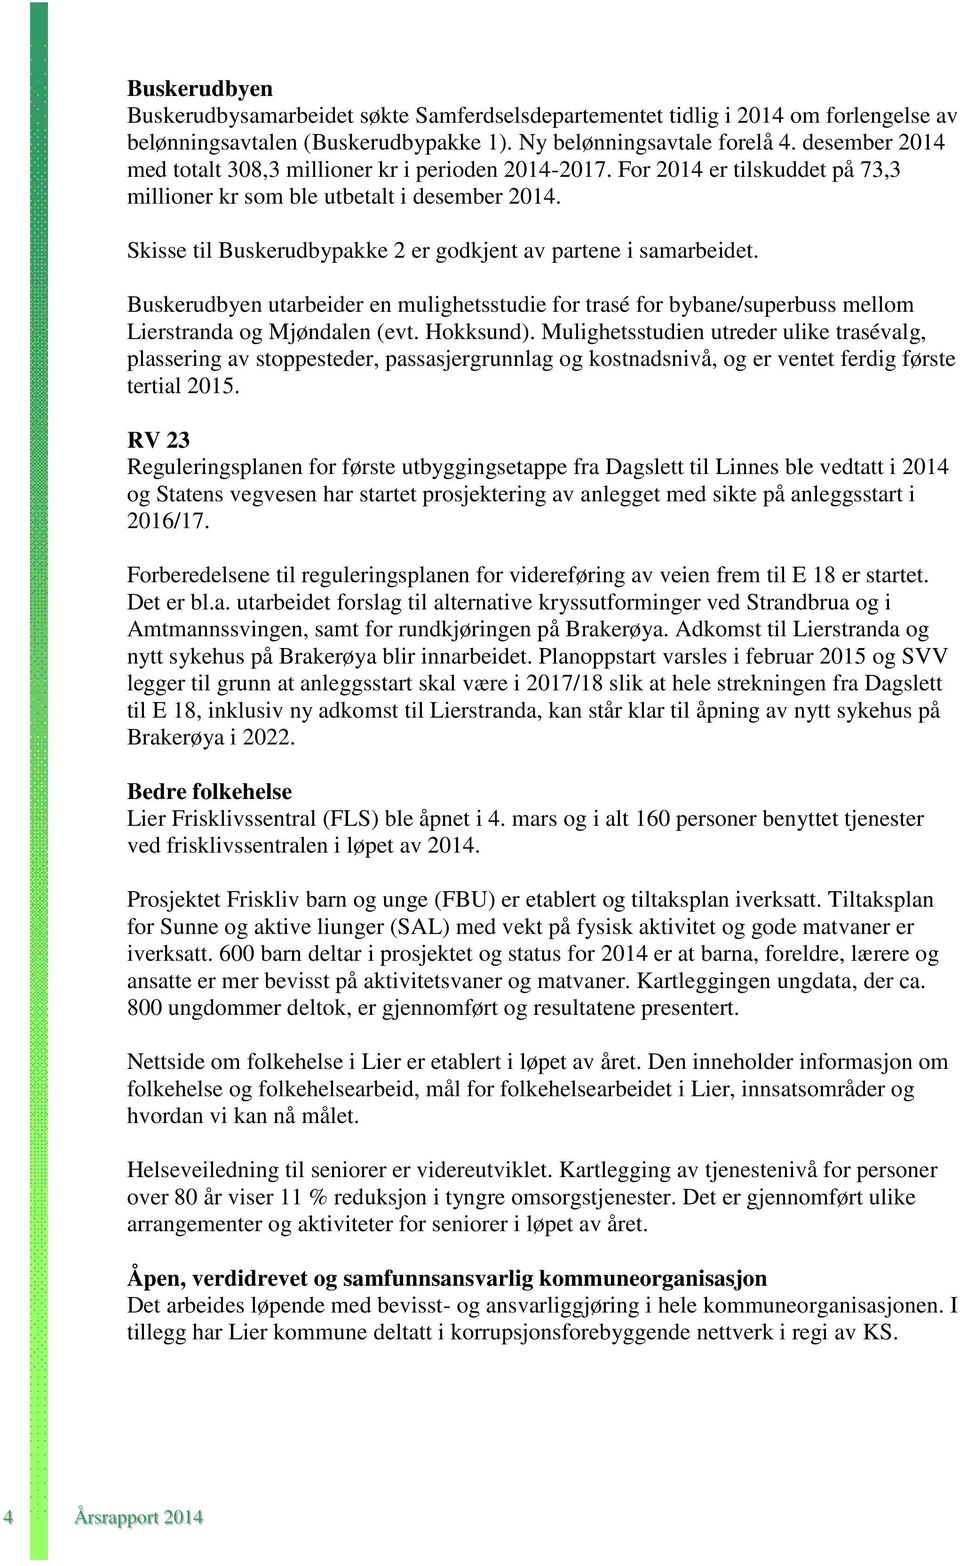 Skisse til Buskerudbypakke 2 er godkjent av partene i samarbeidet. Buskerudbyen utarbeider en mulighetsstudie for trasé for bybane/superbuss mellom Lierstranda og Mjøndalen (evt. Hokksund).